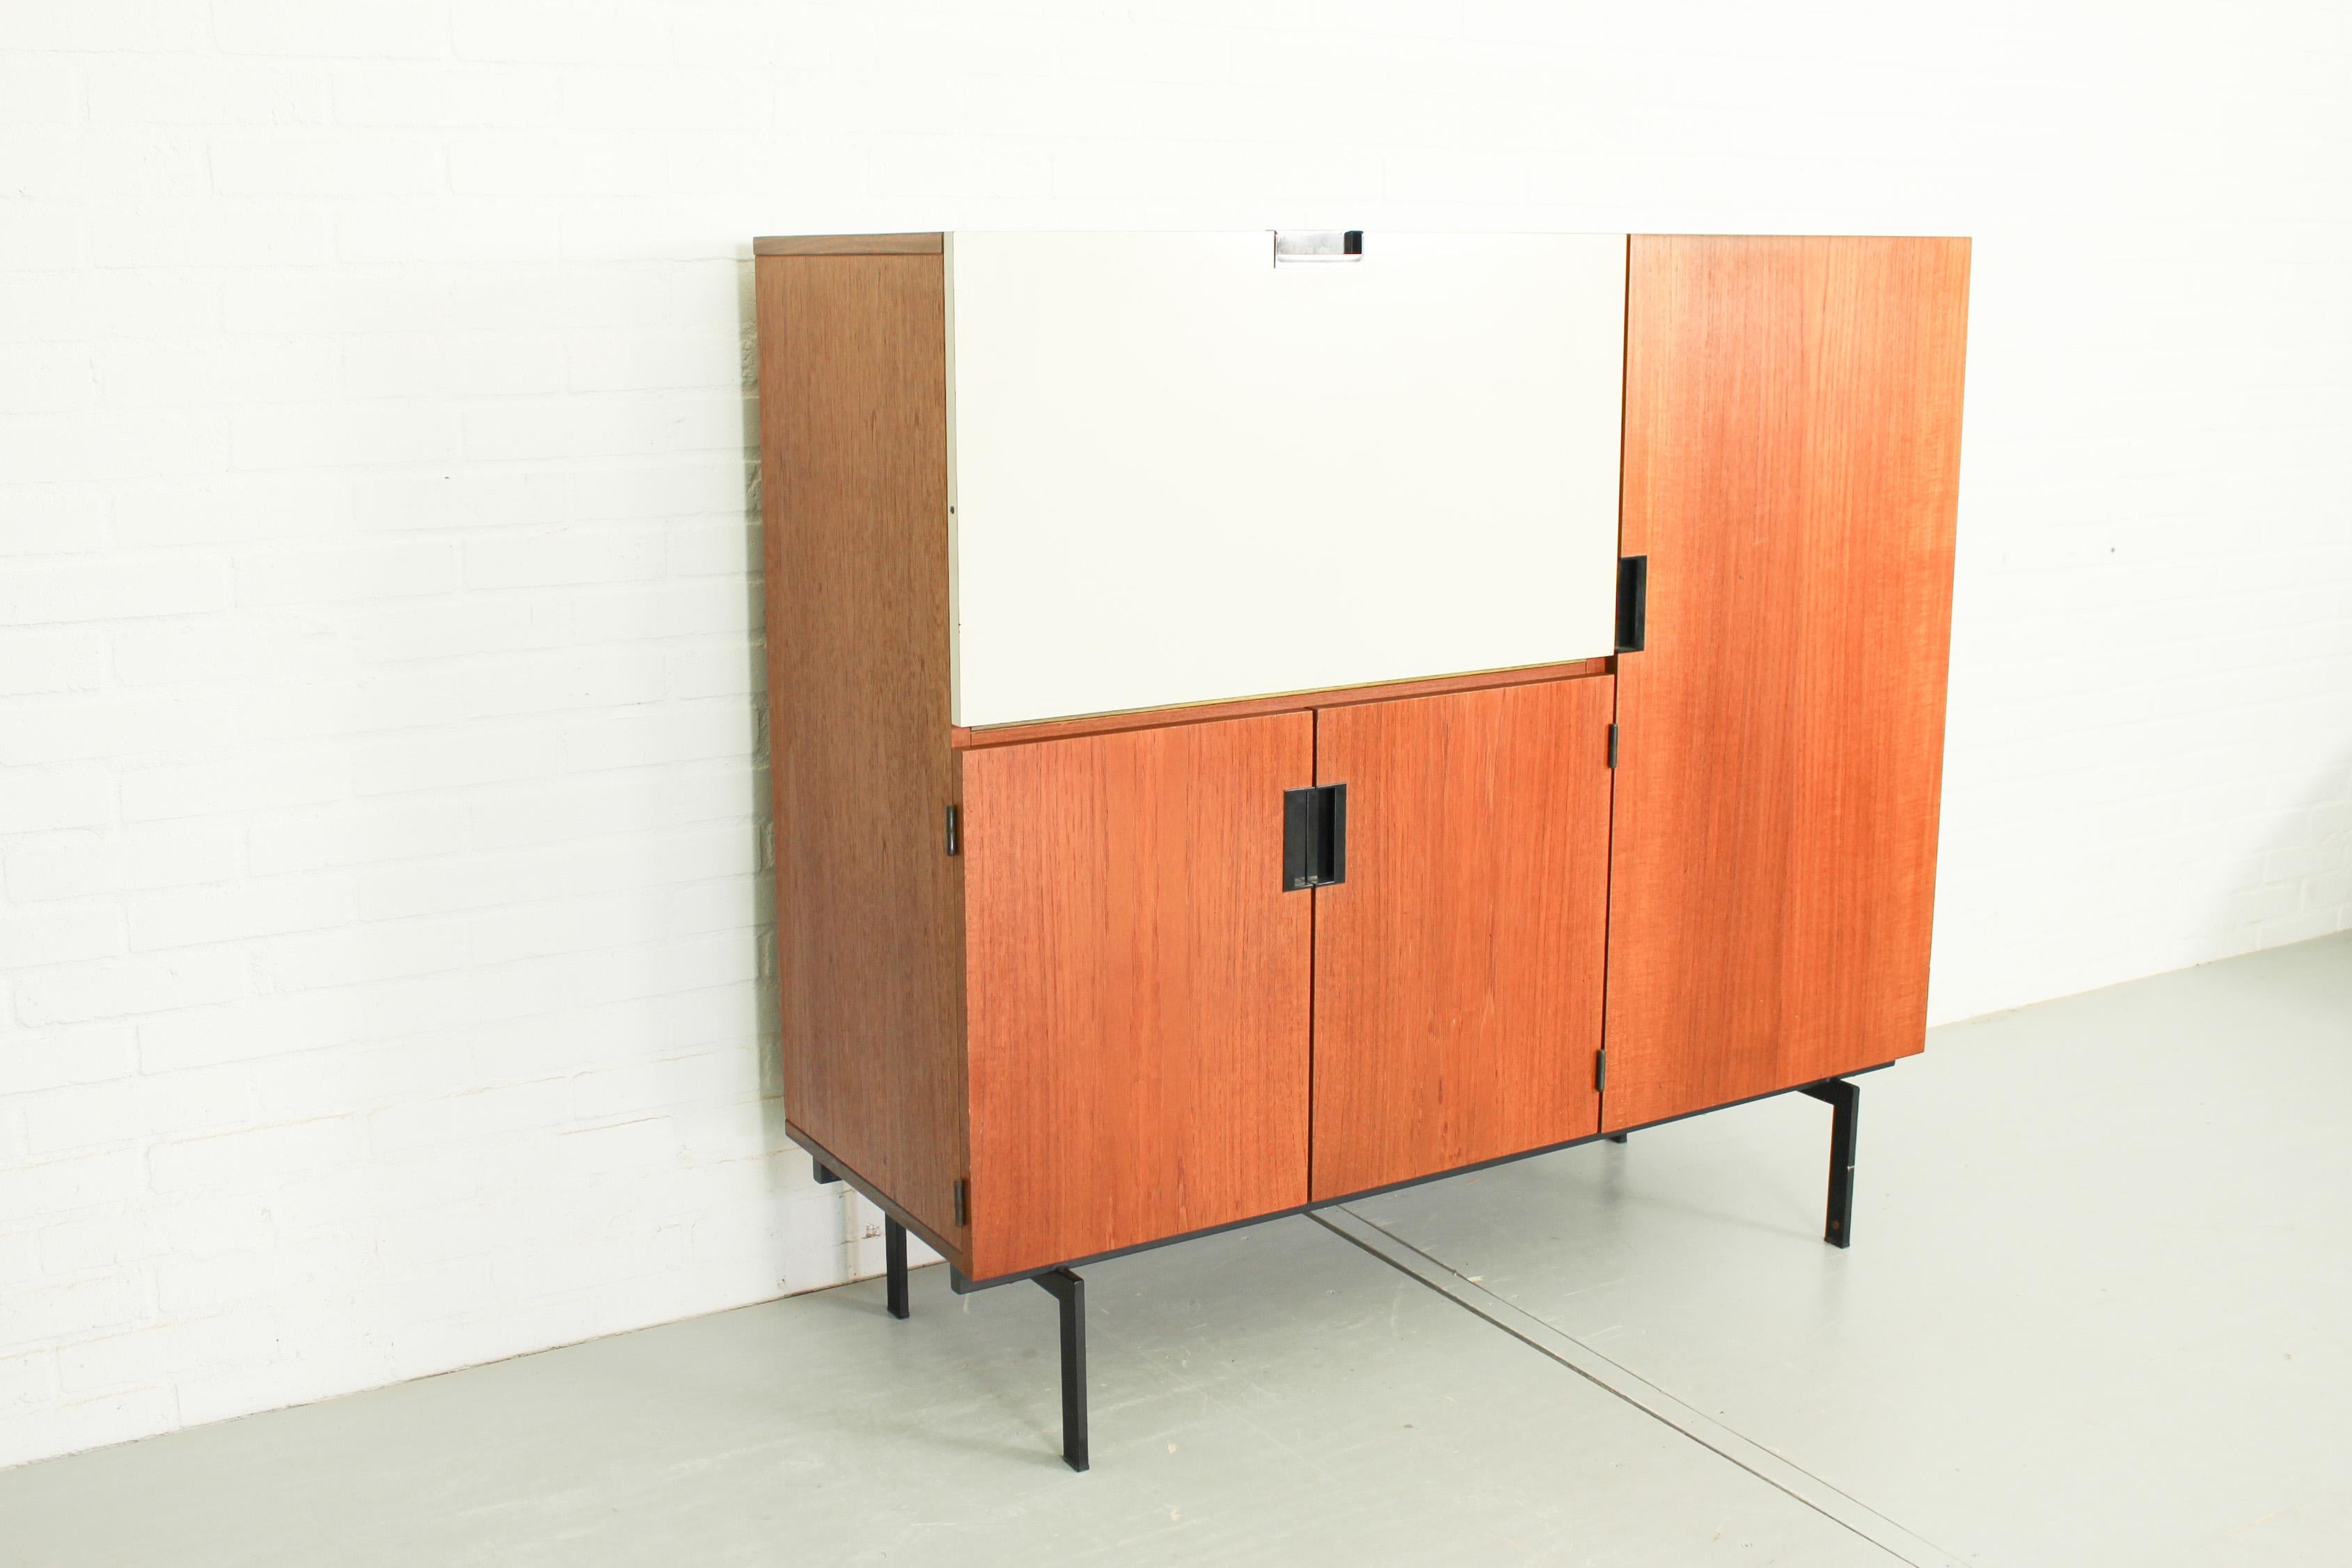 Schrank CU01, entworfen von Cees Braakman für UMS Pastoe im Jahr 1958. Dieser elegante Schrank aus der japanischen Serie verfügt über eine Klappe, die als Tischplatte verwendet werden kann. Der Schrank scheint im Raum zu schweben, denn er hat einen